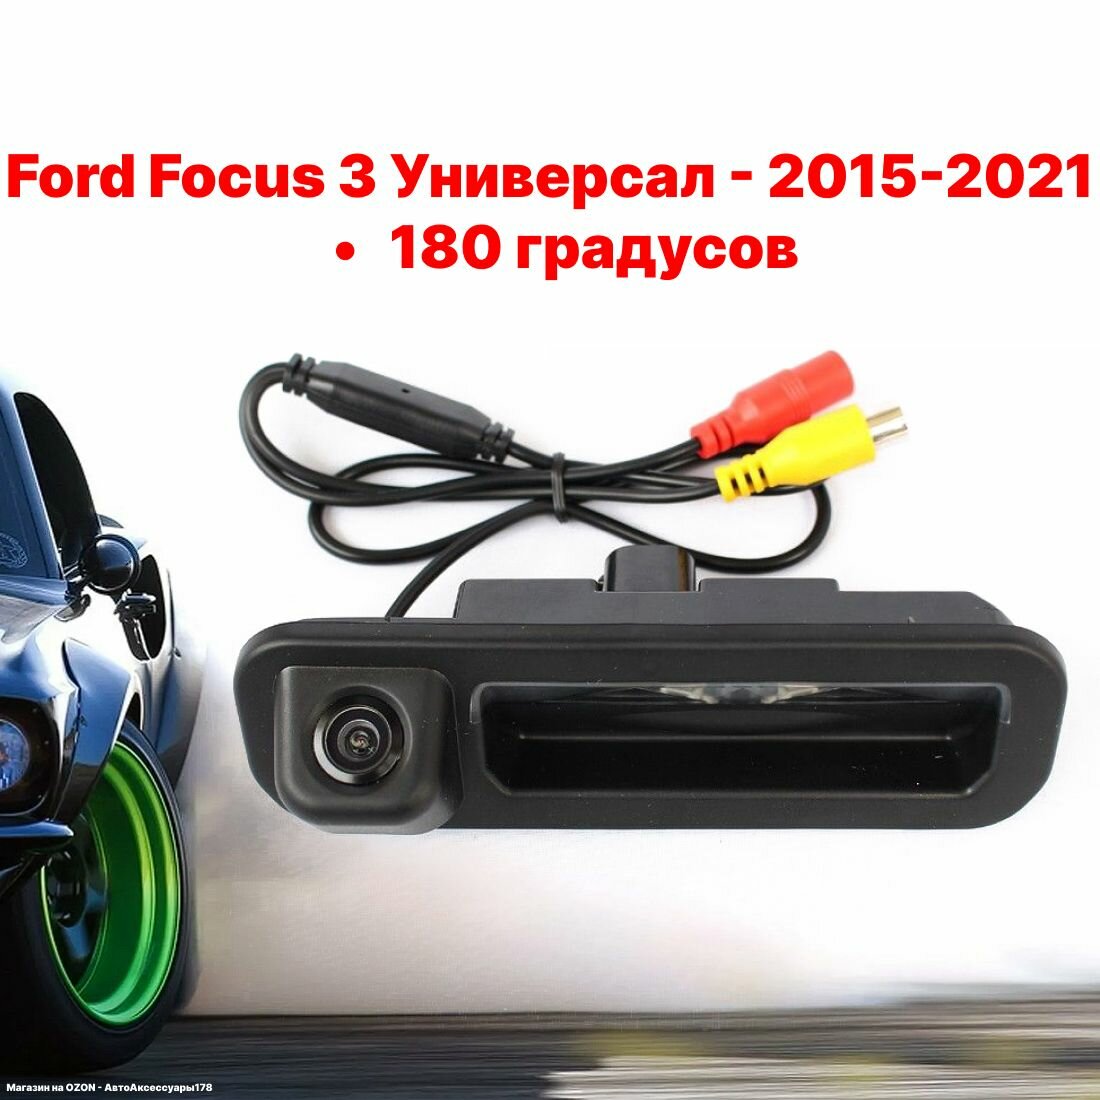 Камера заднего вида Форд Фокус 3 универсал - 180 градусов (Ford Focus 3 Универсал - 2015-2021)